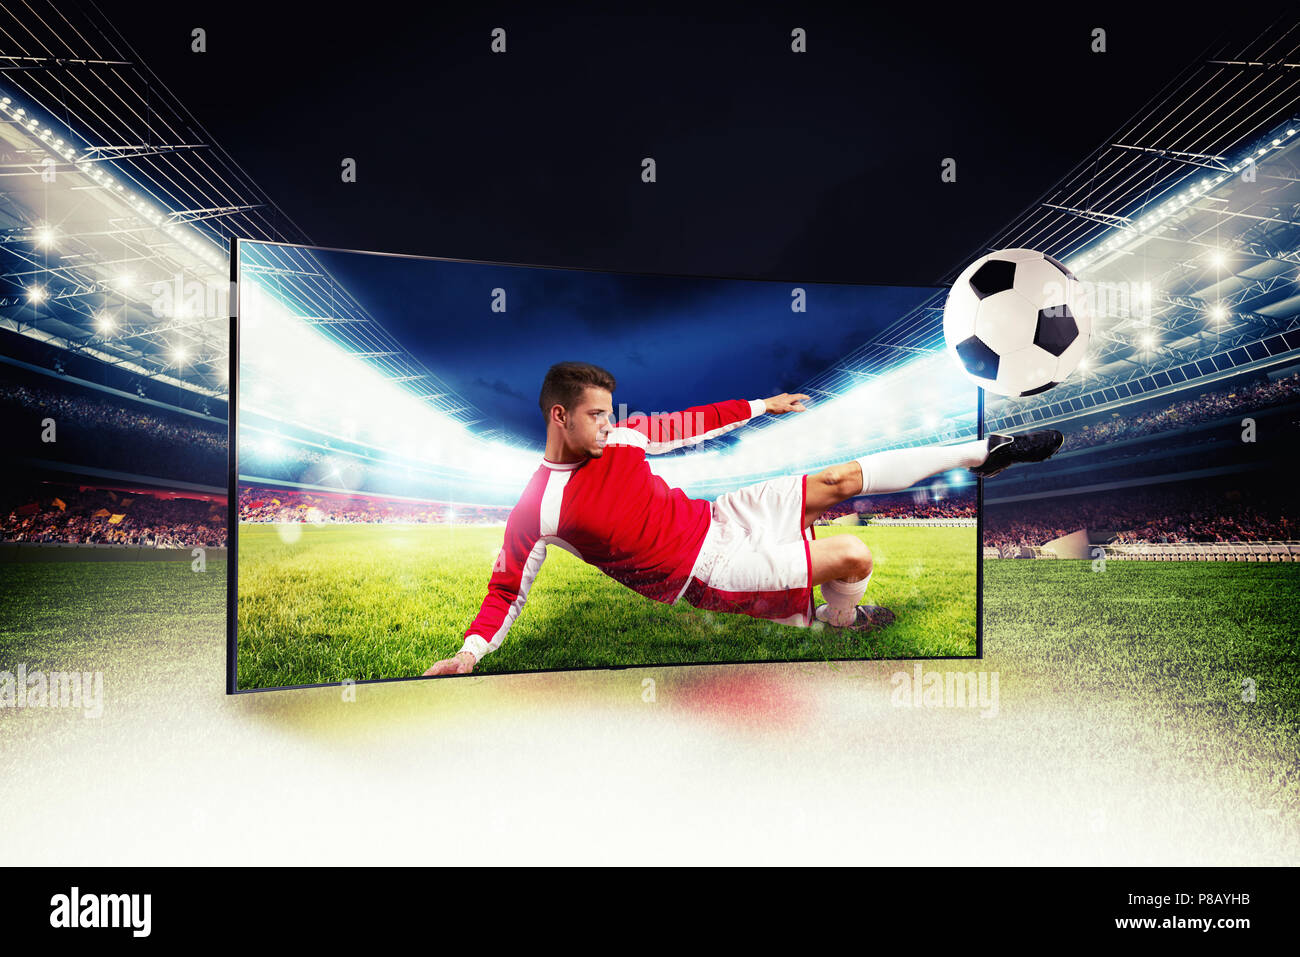 El realismo de las imágenes deportivas difusión en televisión de alta definición Foto de stock